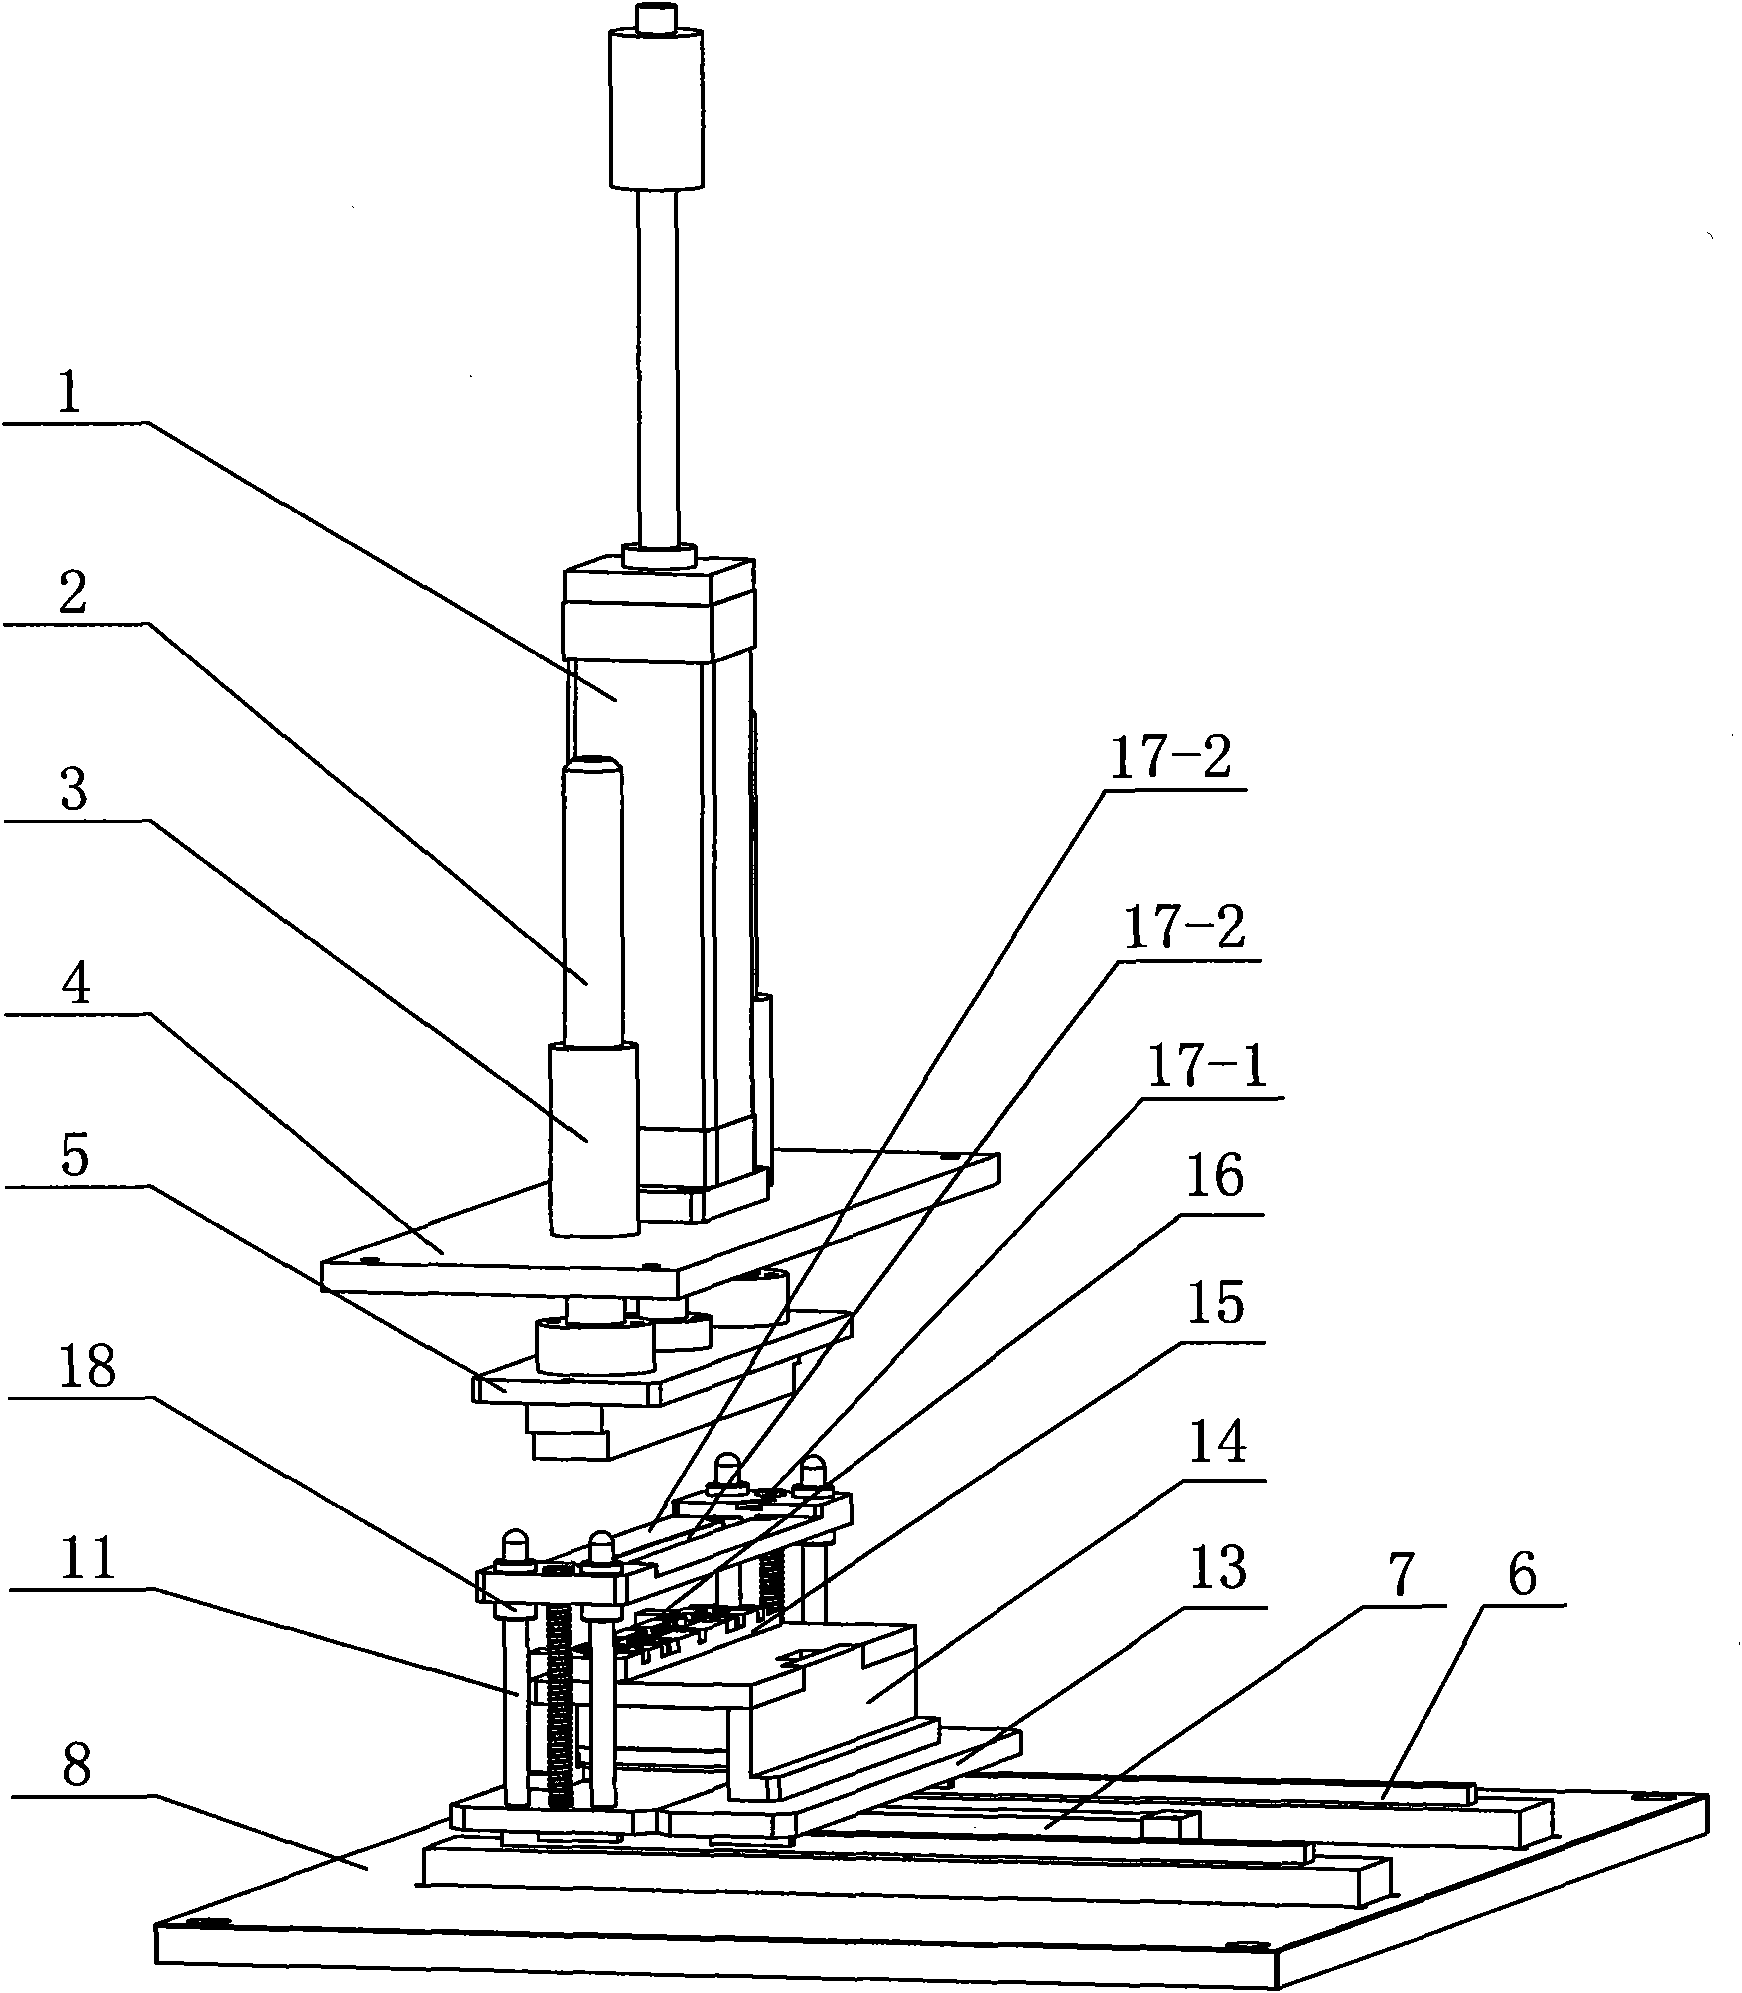 Lamp crimping and assembling mechanism